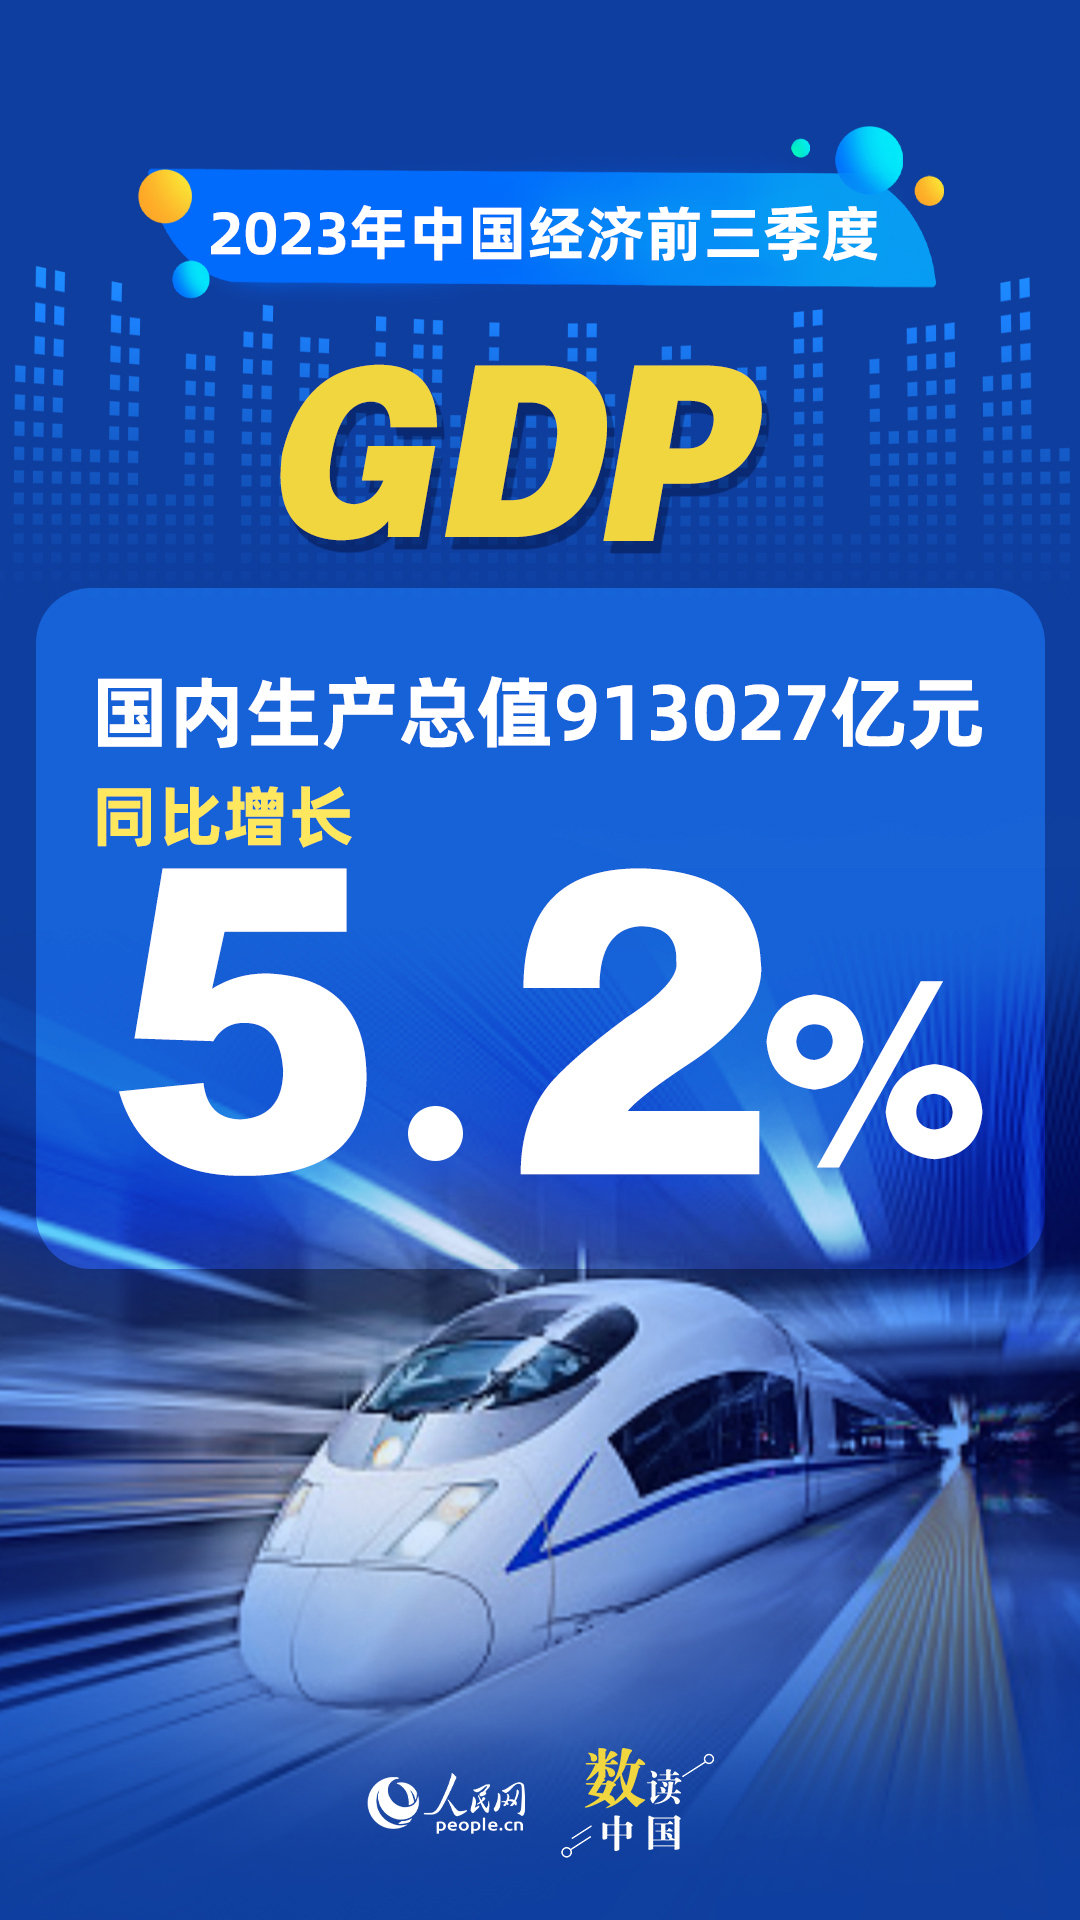 天顺注册：数读中国 | 前三季度国民经济持续恢复向好 积极因素累积增多